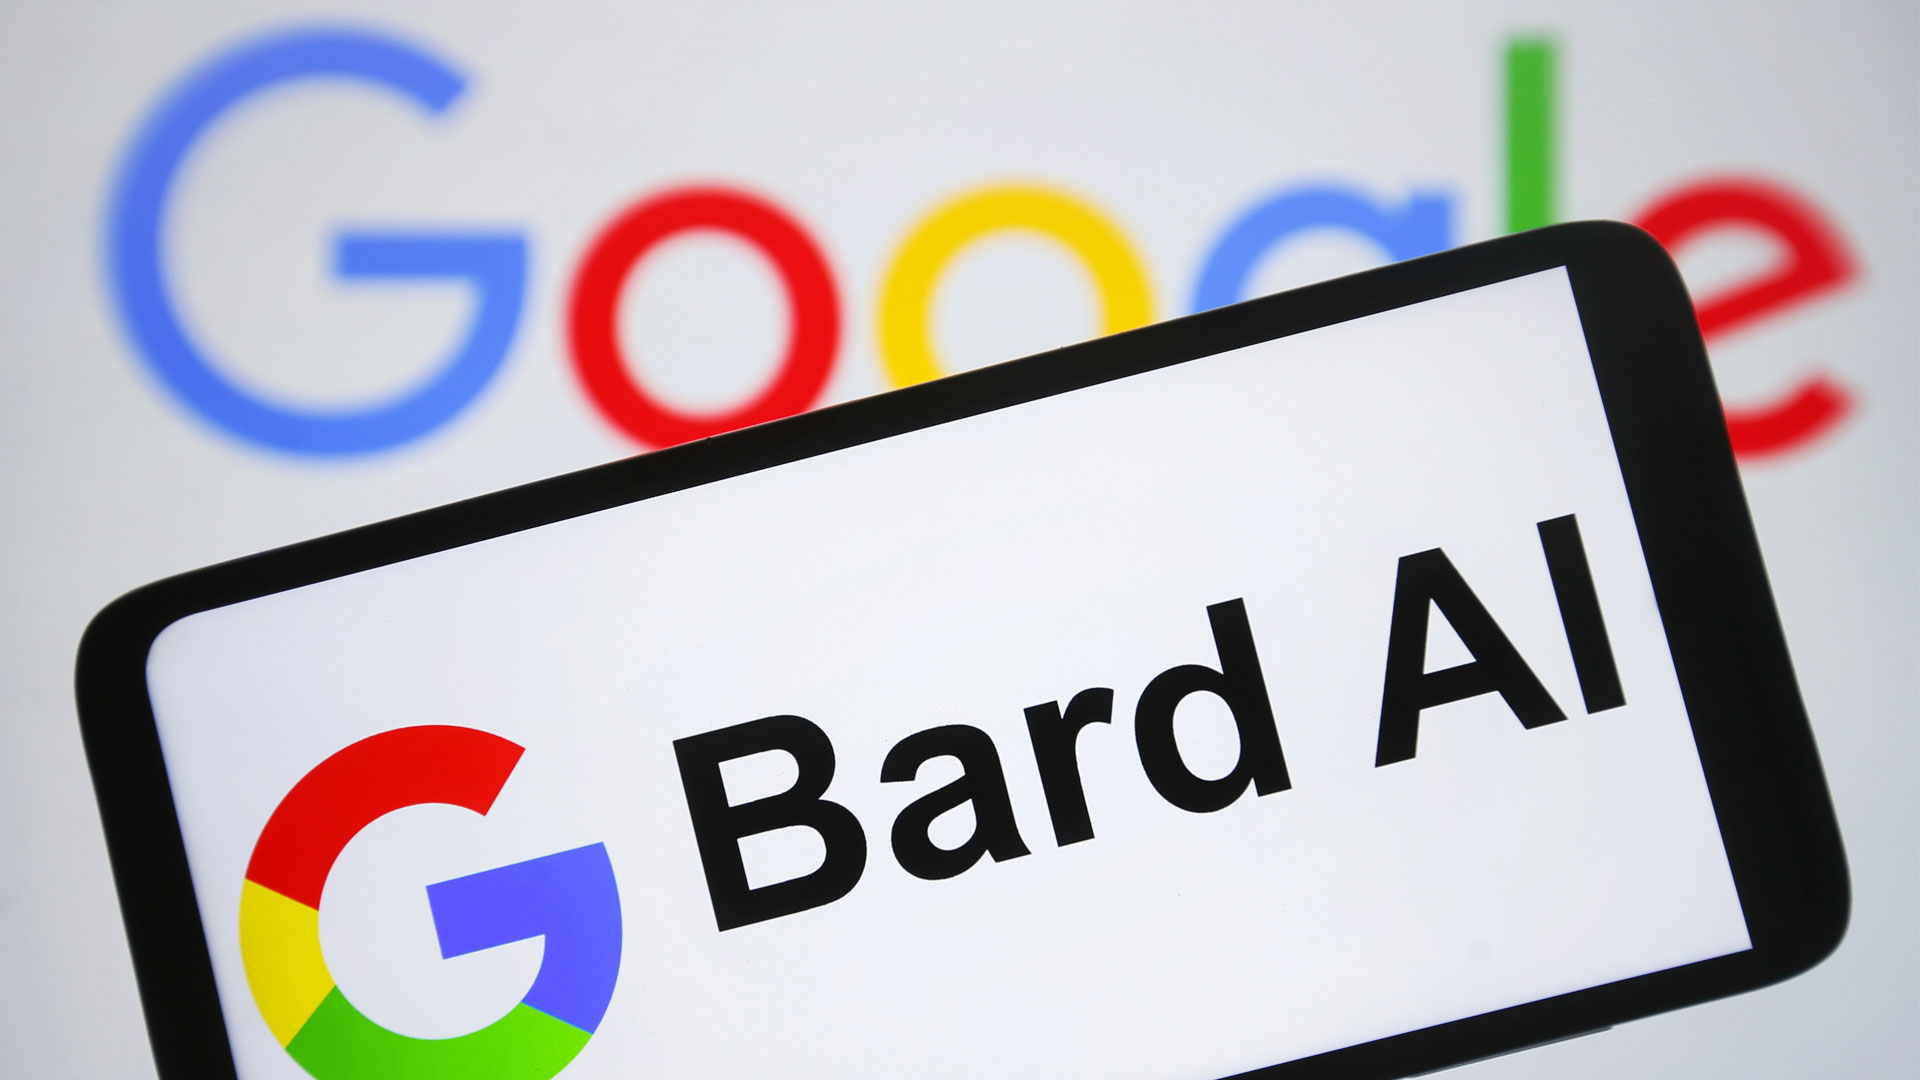 Google Bard наконец-то получил бесплатный генератор изображений с искусственным интеллектом – вот как его попробовать